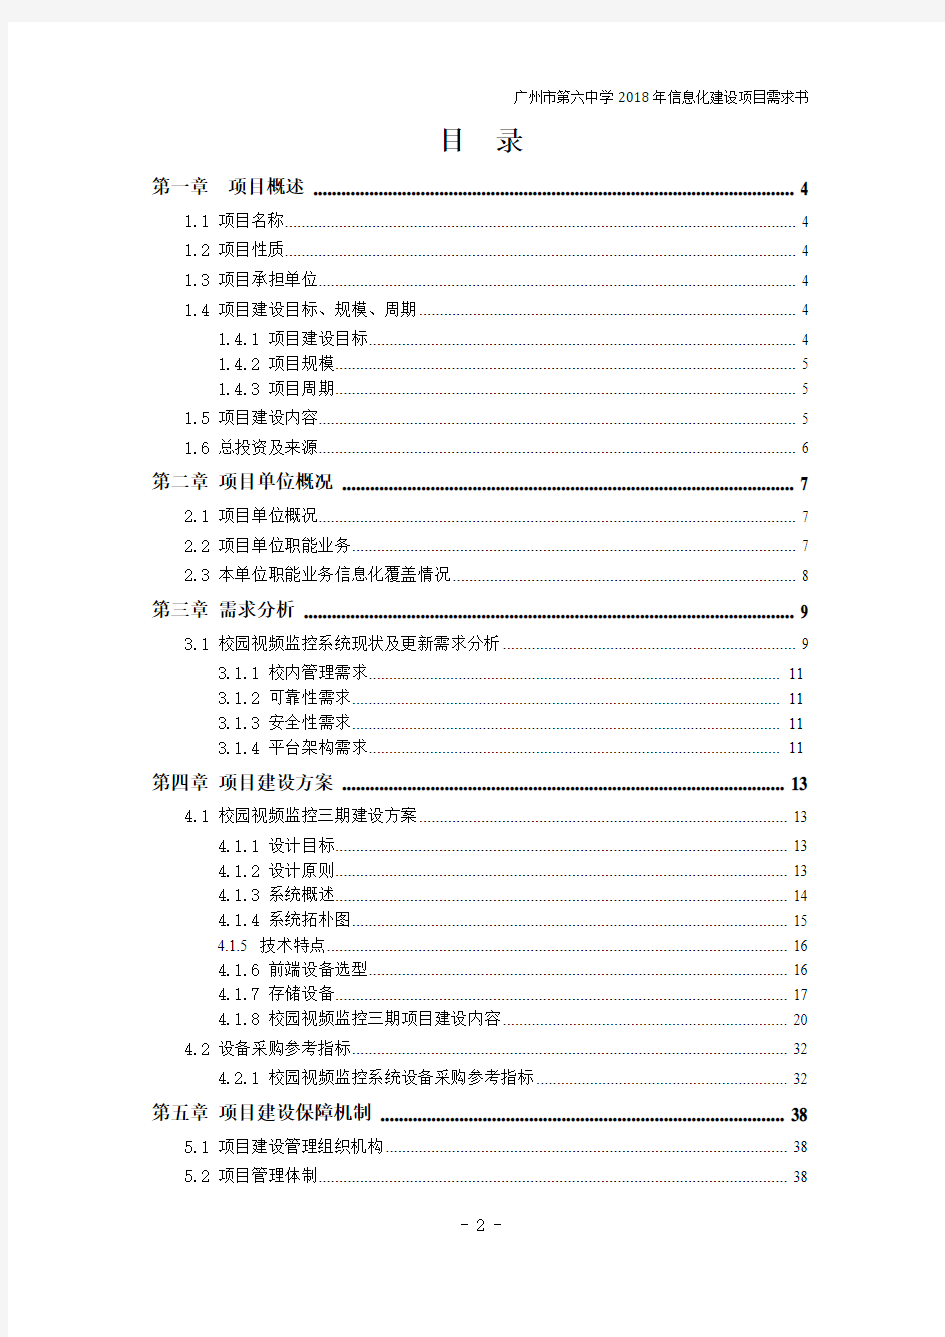 广州第六中学视频监控系统项目建设三期采购项目招标需求书